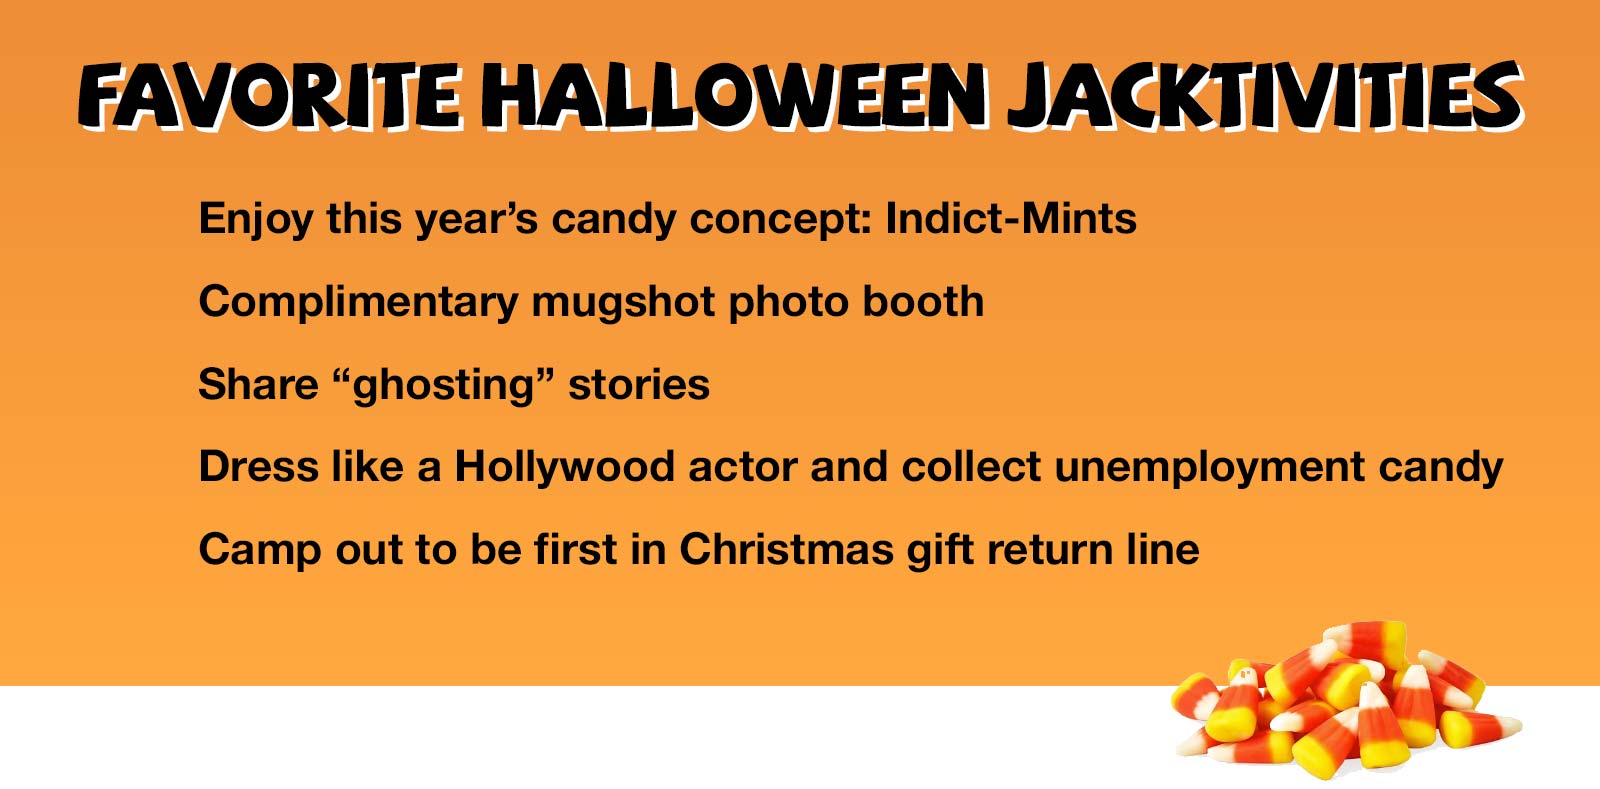 Jack FM's favorite Halloween Jacktivities